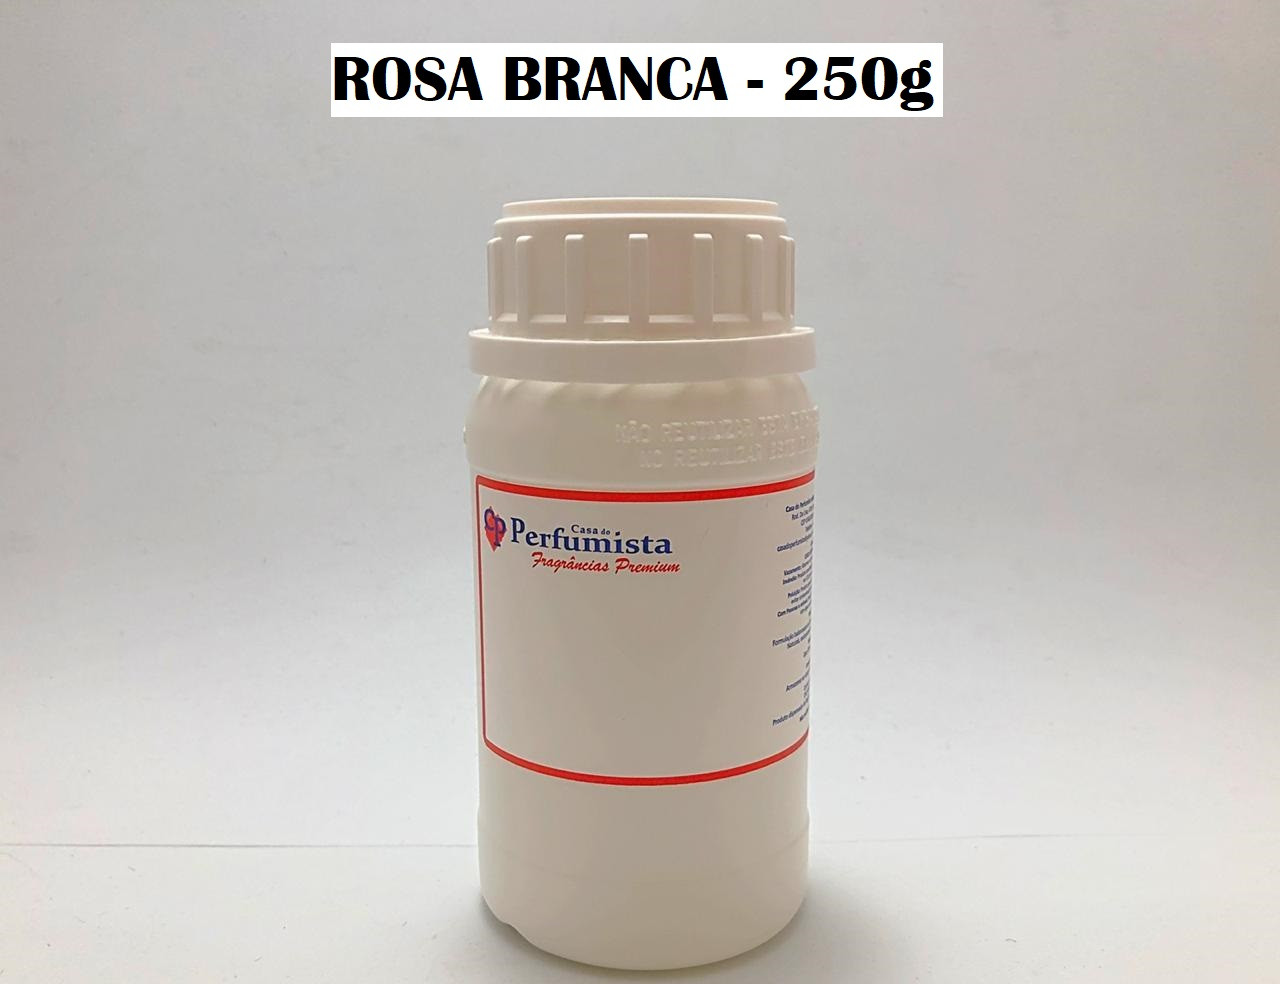 ROSA BRANCA - 250g